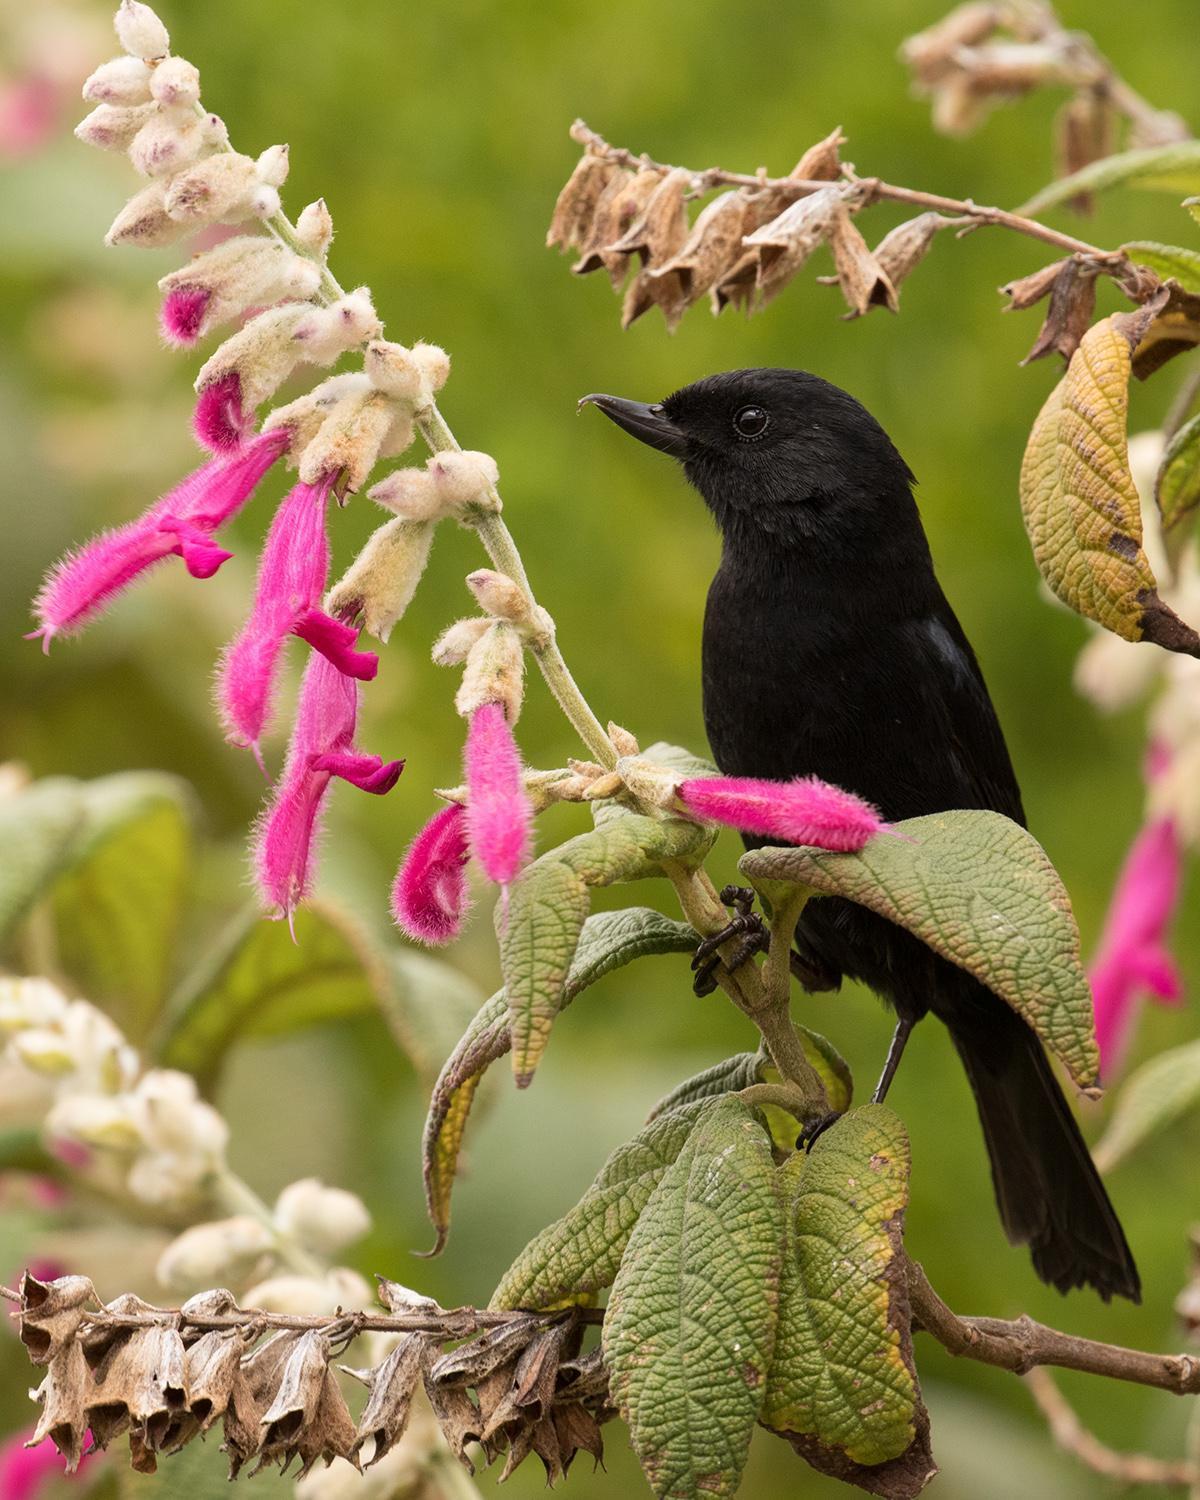 Black Flowerpiercer Photo by Greg DuBois